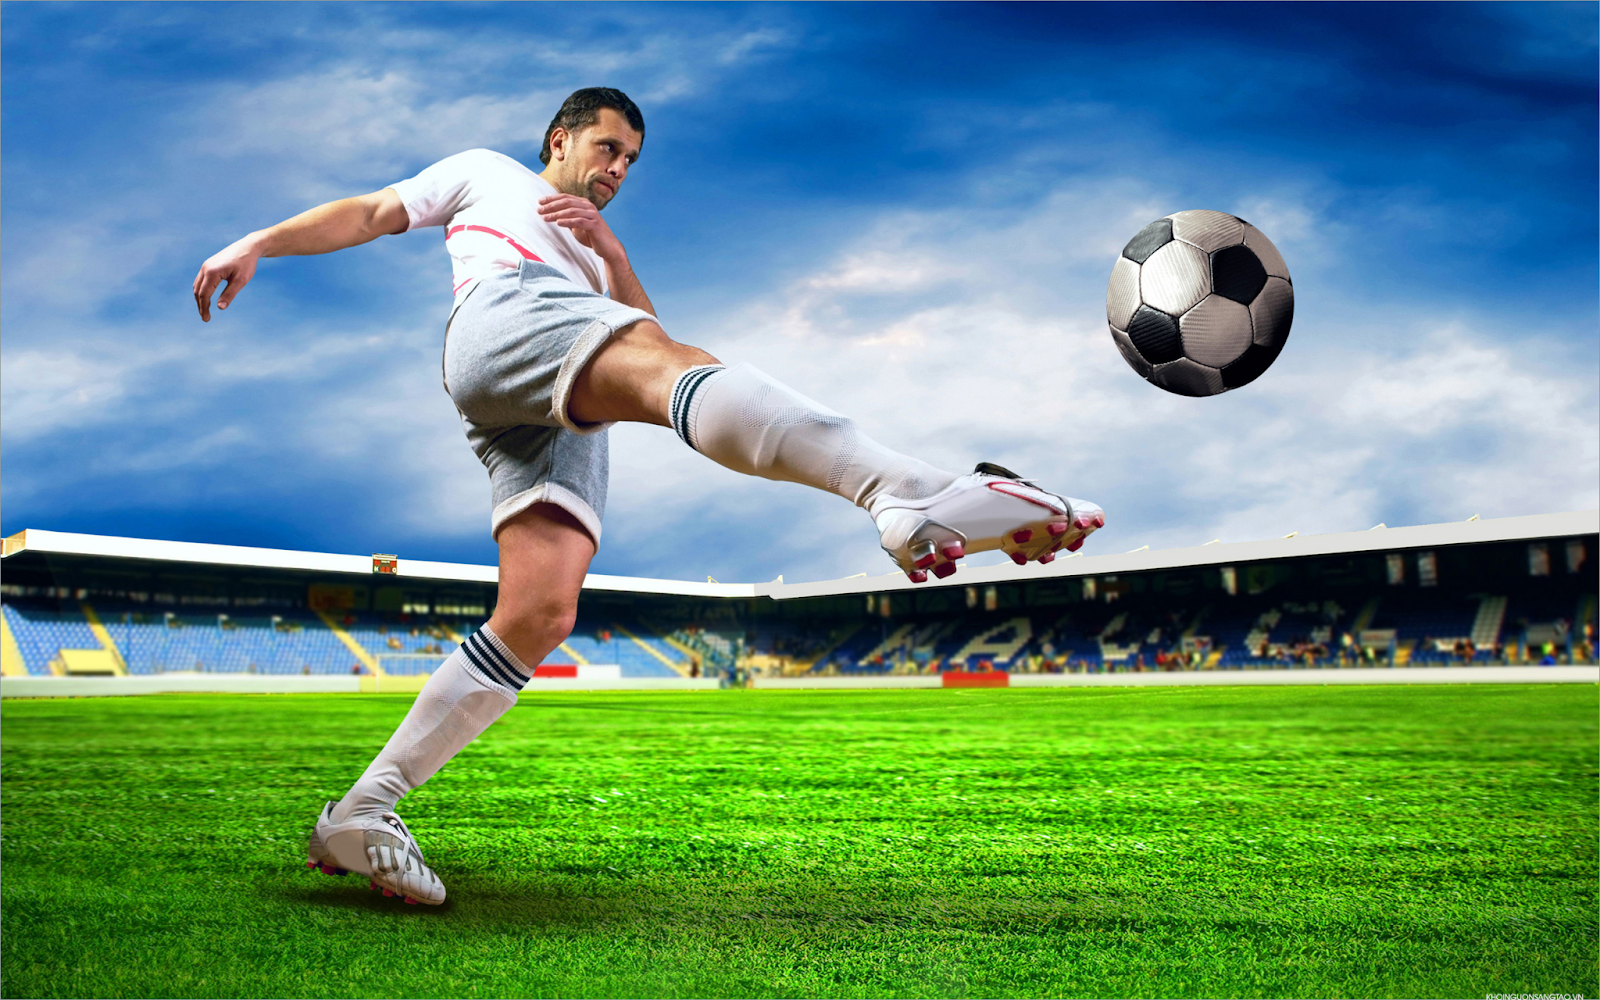 Xem bóng đá HD trực tuyến: Sự lựa chọn hàng đầu của fan túc cầu